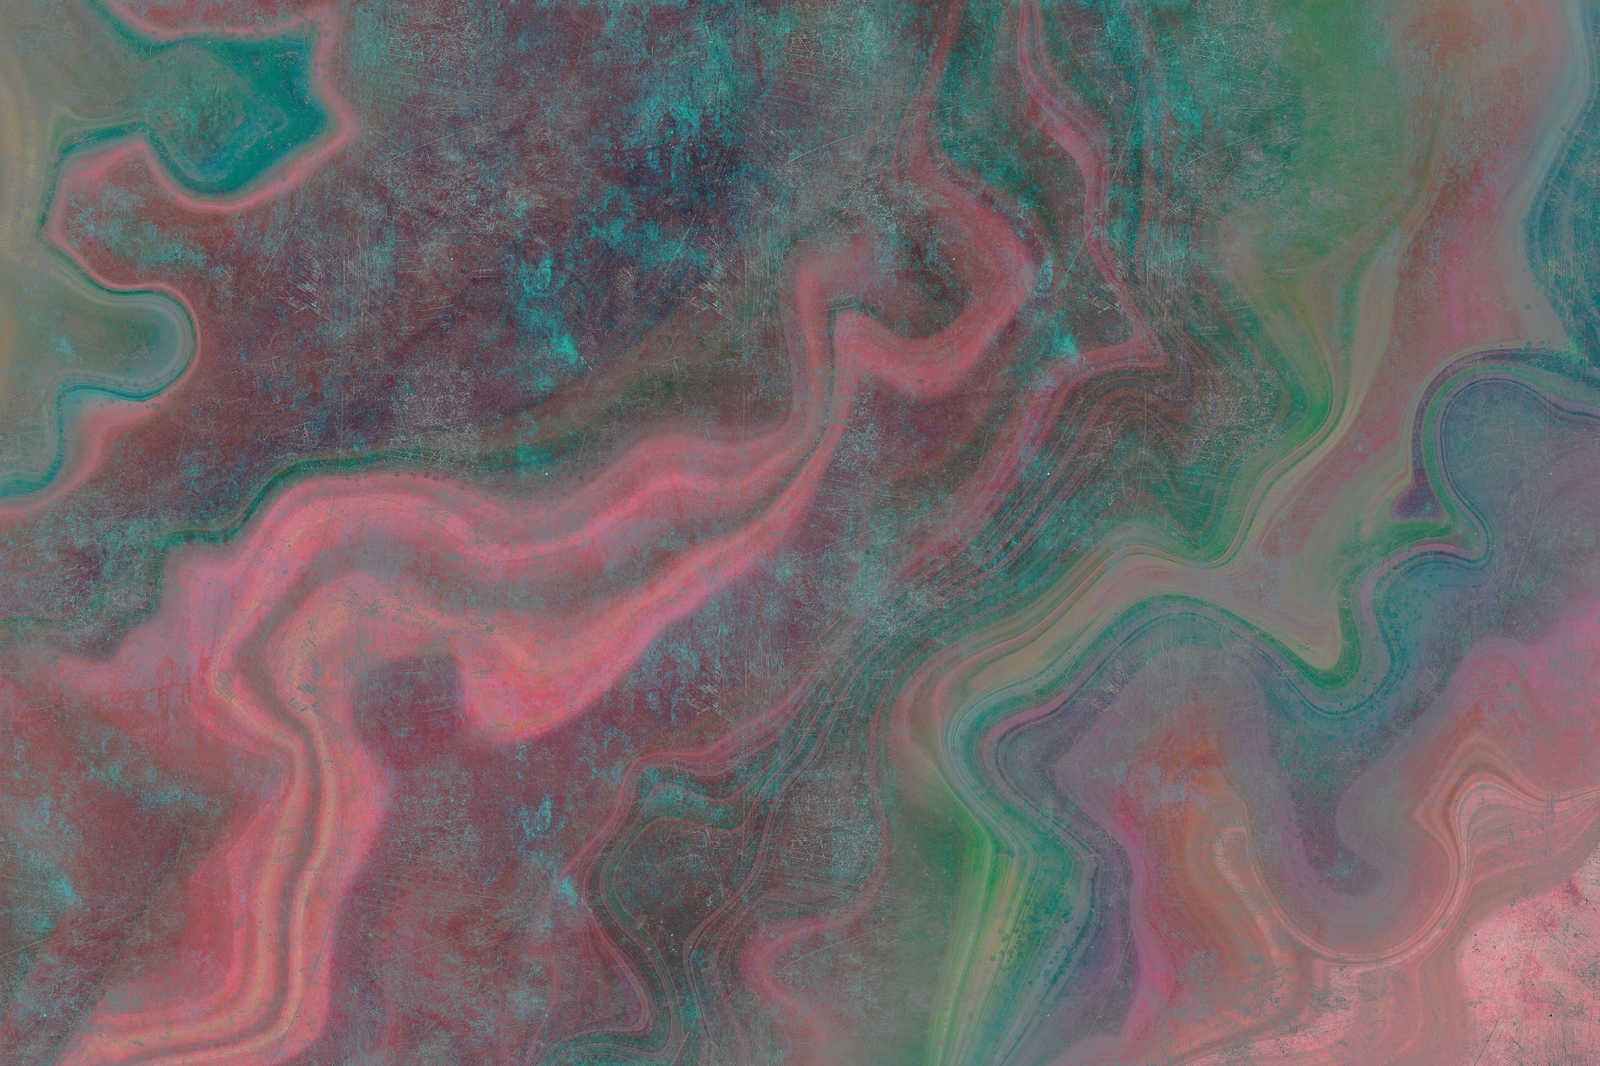             Marmo 1 - Marmo colorato come quadro su tela con struttura a graffi - 0,90 m x 0,60 m
        